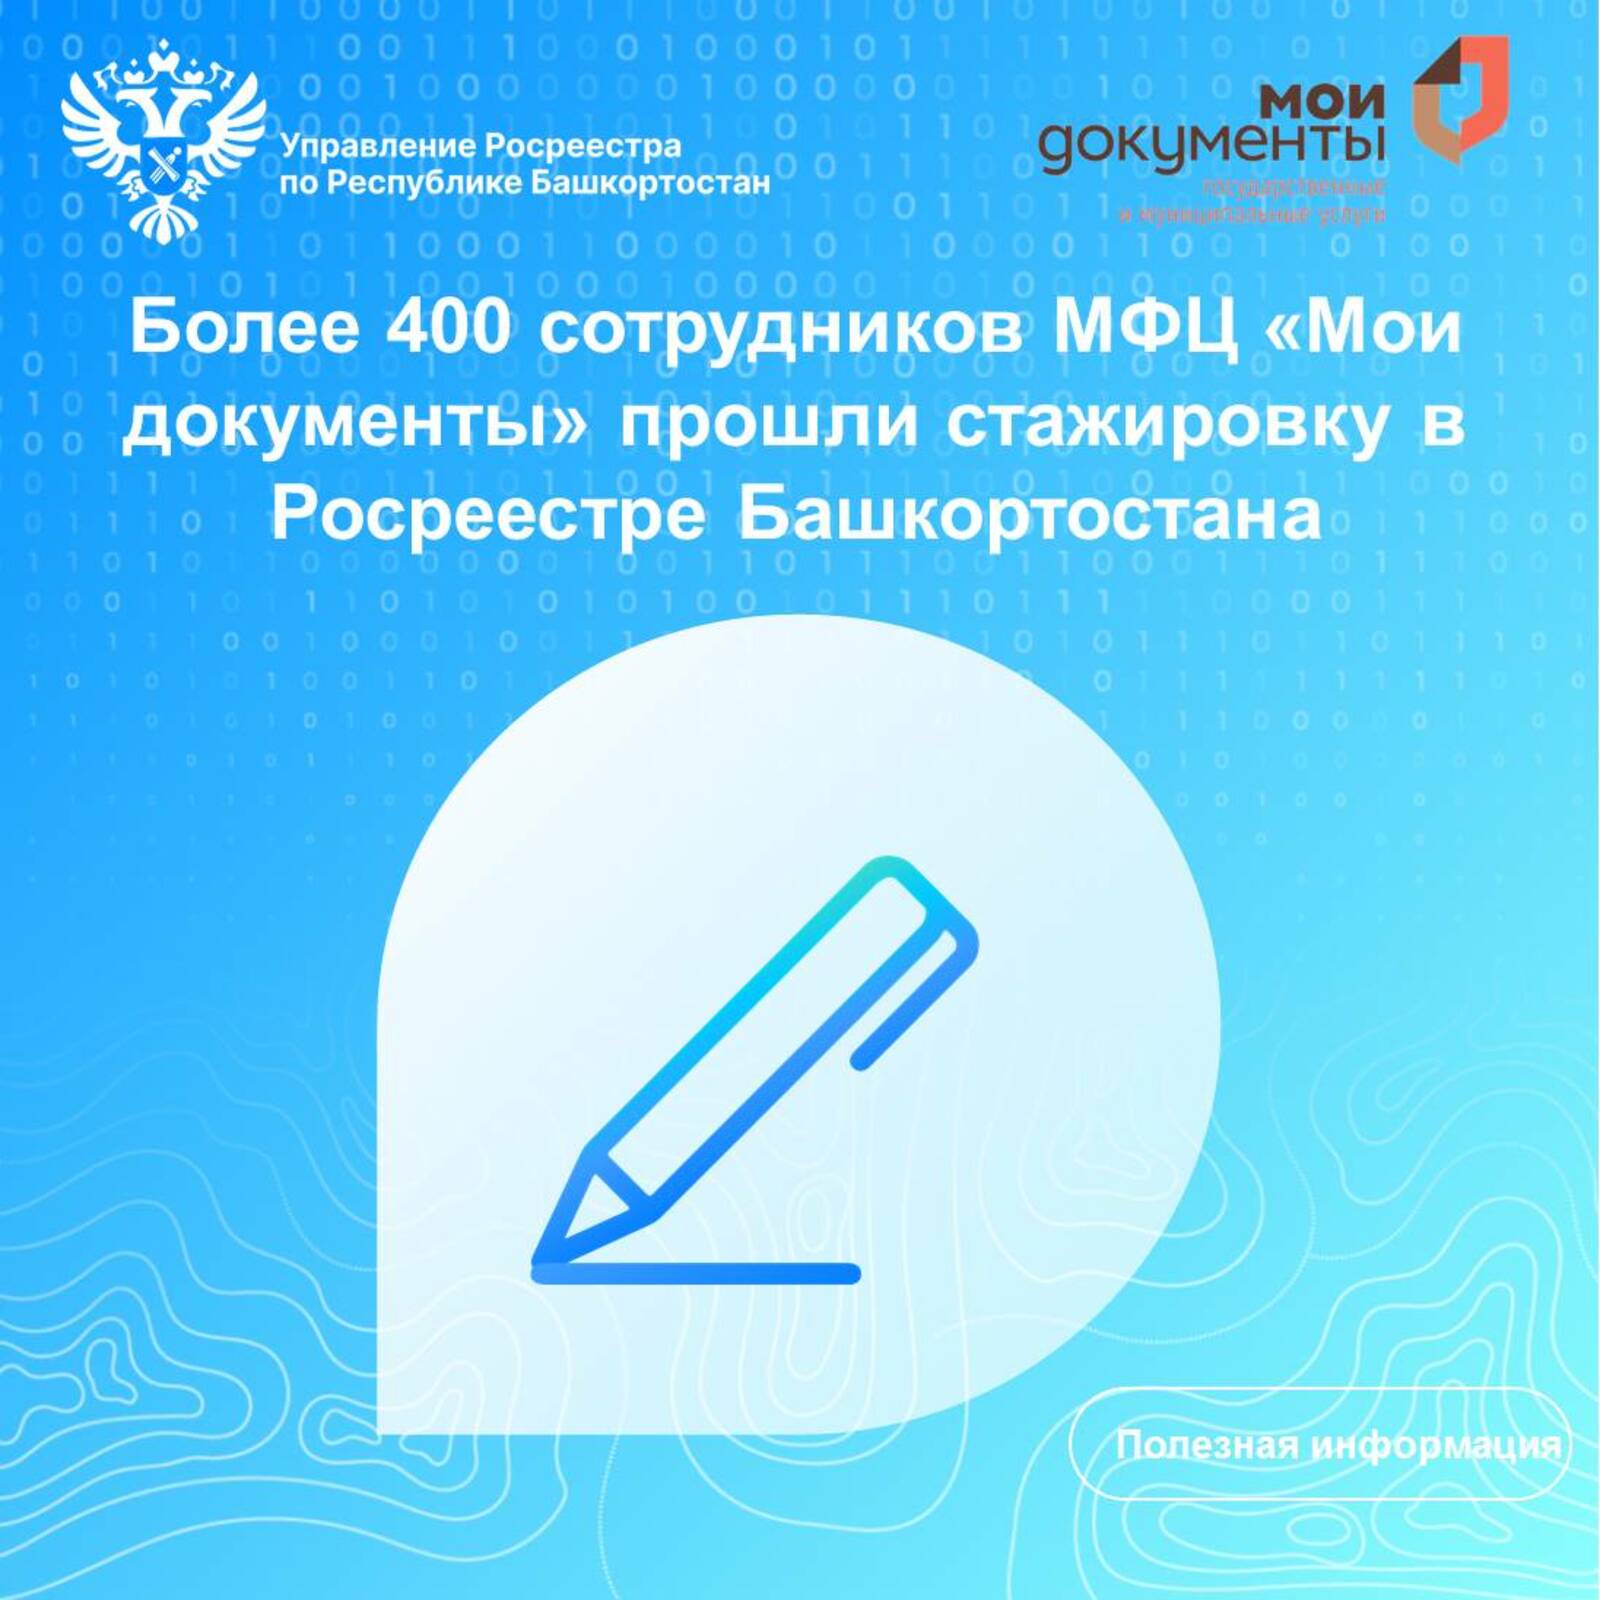 Более 400 сотрудников МФЦ «Мои документы» прошли стажировку в Росреестре Башкортостана